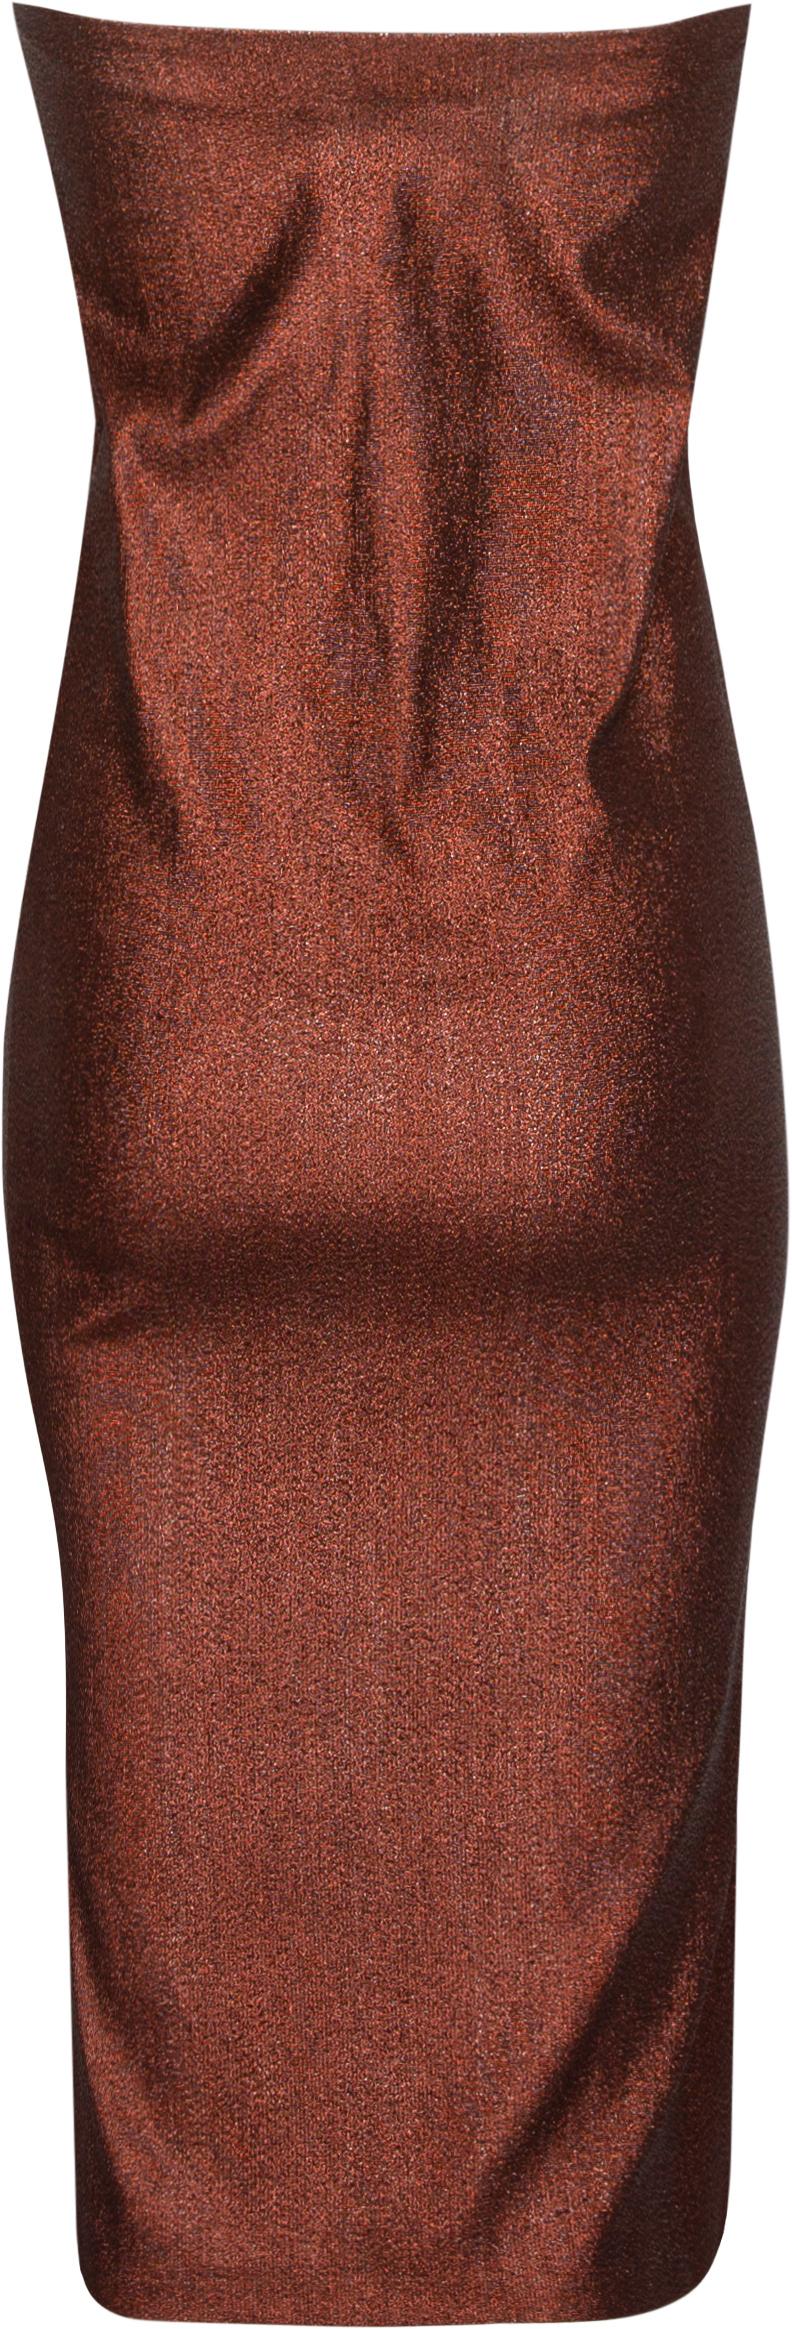 Robe tube en lurex marron métallisé de la collection printemps 1997 de Gucci by Tom Ford, portée par Naomi Campbell.

Poitrine : 32-36